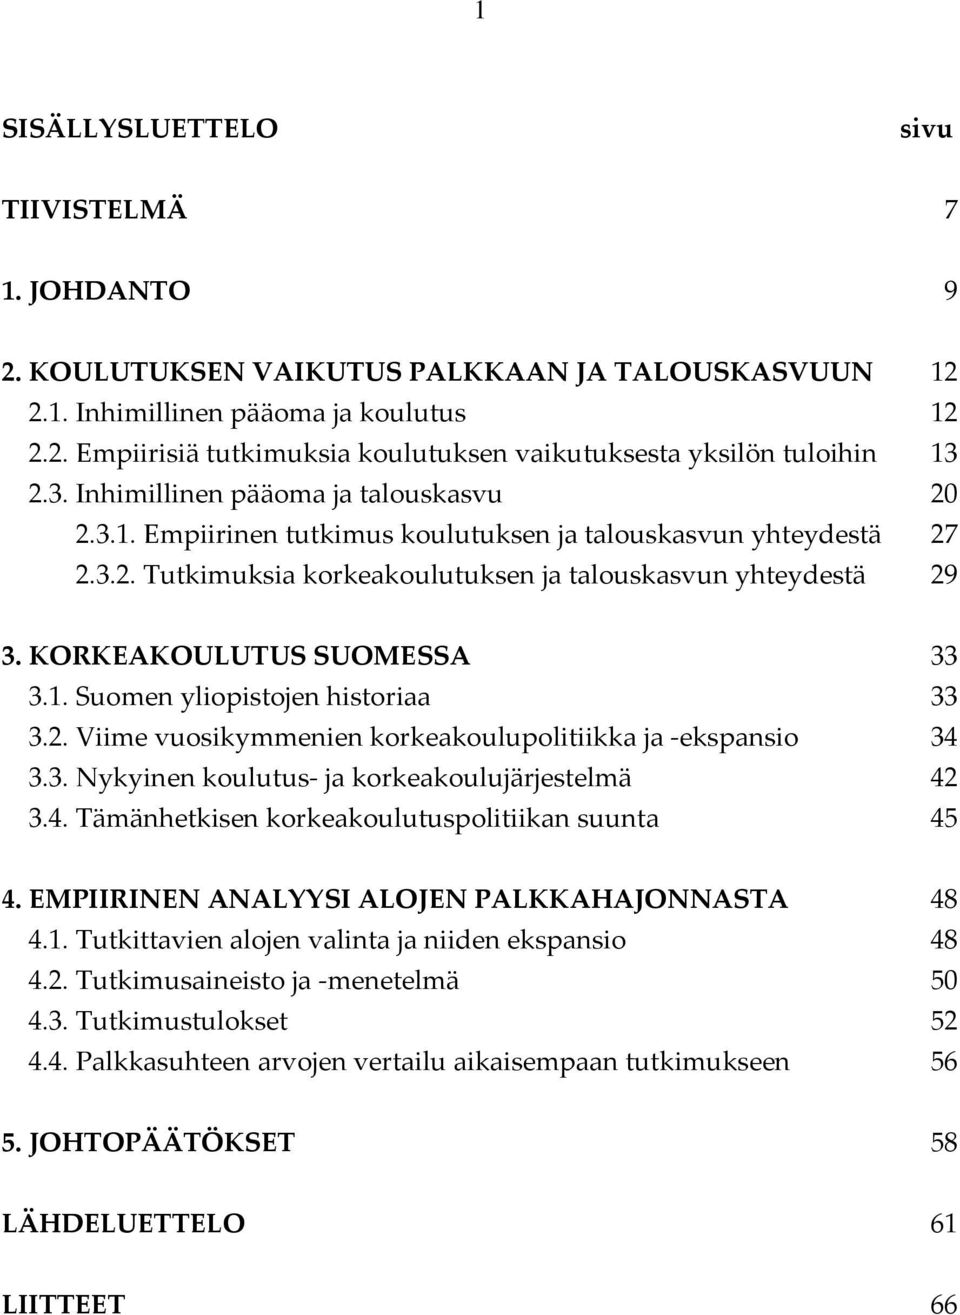 KORKEAKOULUTUS SUOMESSA 33 3.1. Suomen yliopistojen historiaa 33 3.2. Viime vuosikymmenien korkeakoulupolitiikka ja ekspansio 34 3.3. Nykyinen koulutus ja korkeakoulujärjestelmä 42 3.4. Tämänhetkisen korkeakoulutuspolitiikan suunta 45 4.